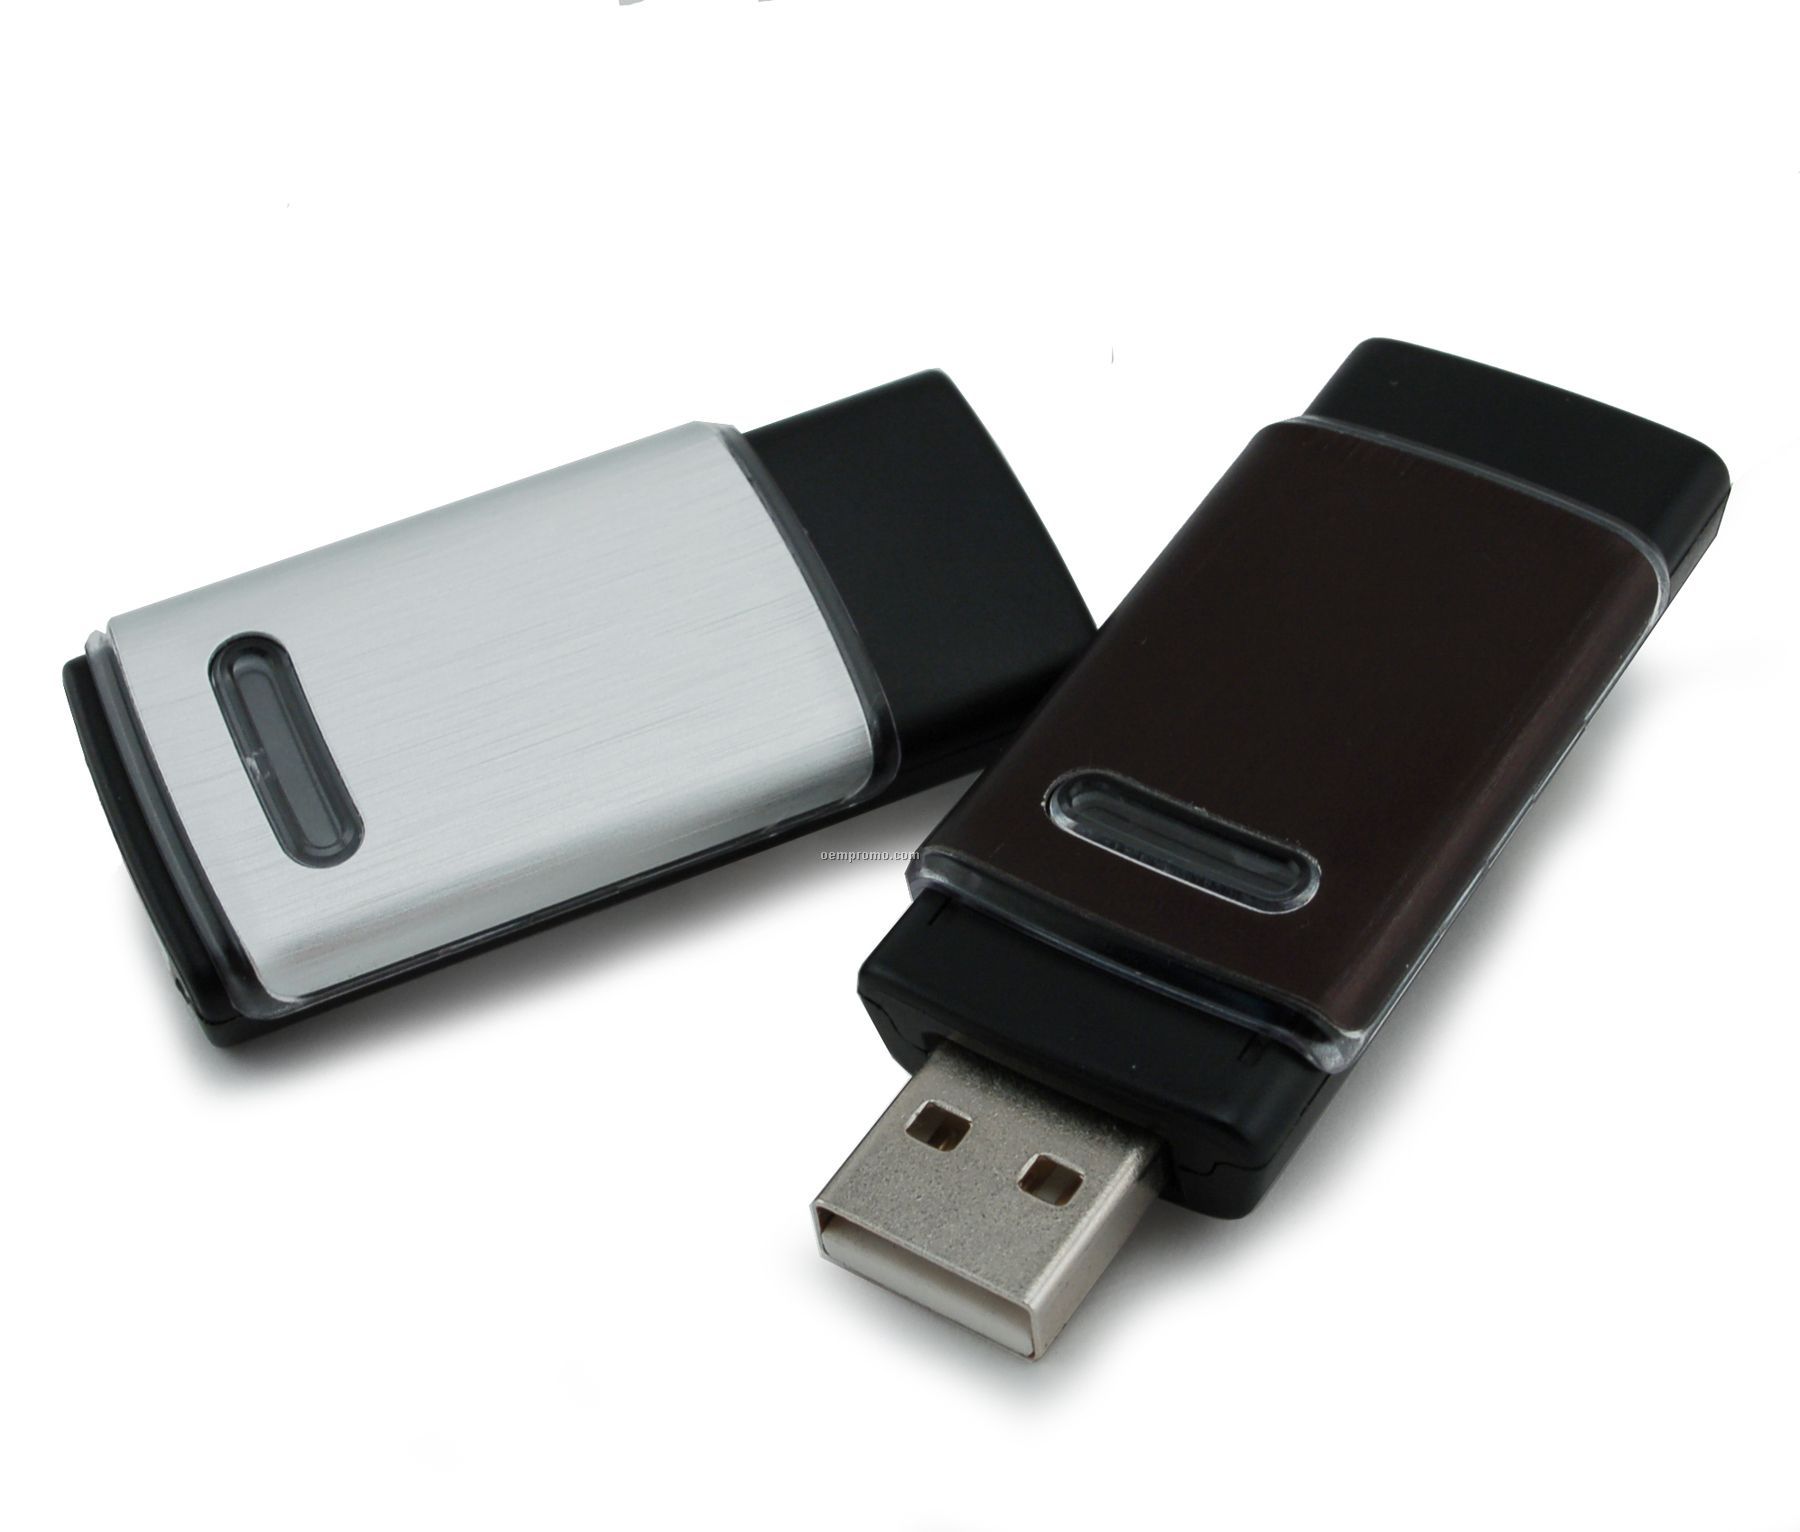 4 Gb Retractable USB Drive 600 Series